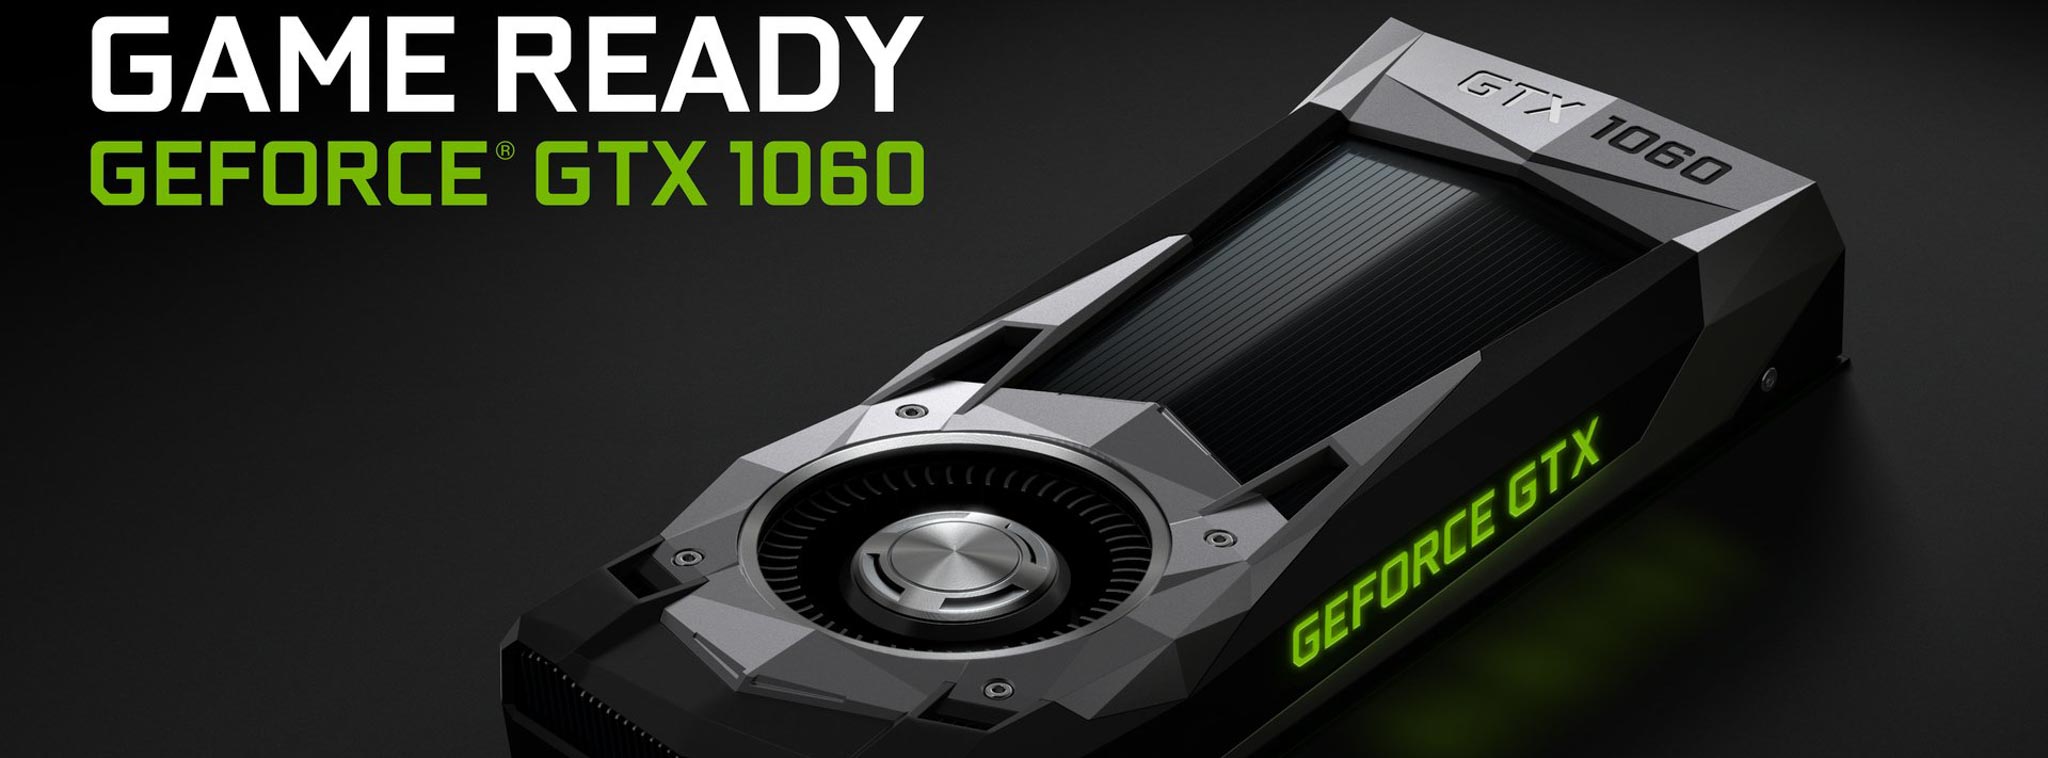 Nvidia giới thiệu GeForce GTX 1060 5 GB dành cho phòng net